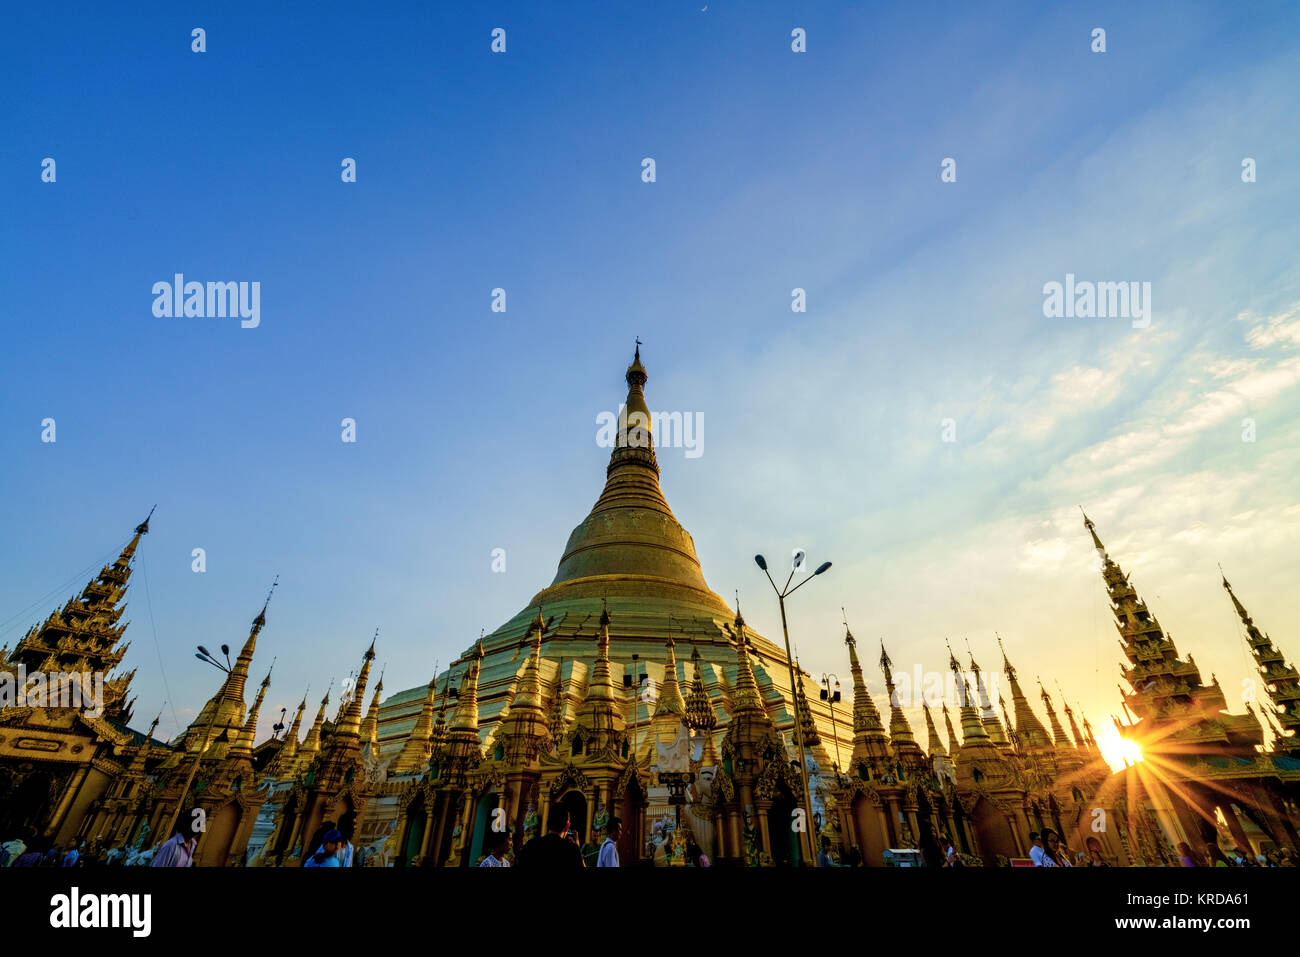 Royalty high quality free stock image of Shwedagon Paya pagoda Myanmer famous sacred place and tourist attraction landmark.Yangon, Myanmar Stock Photo